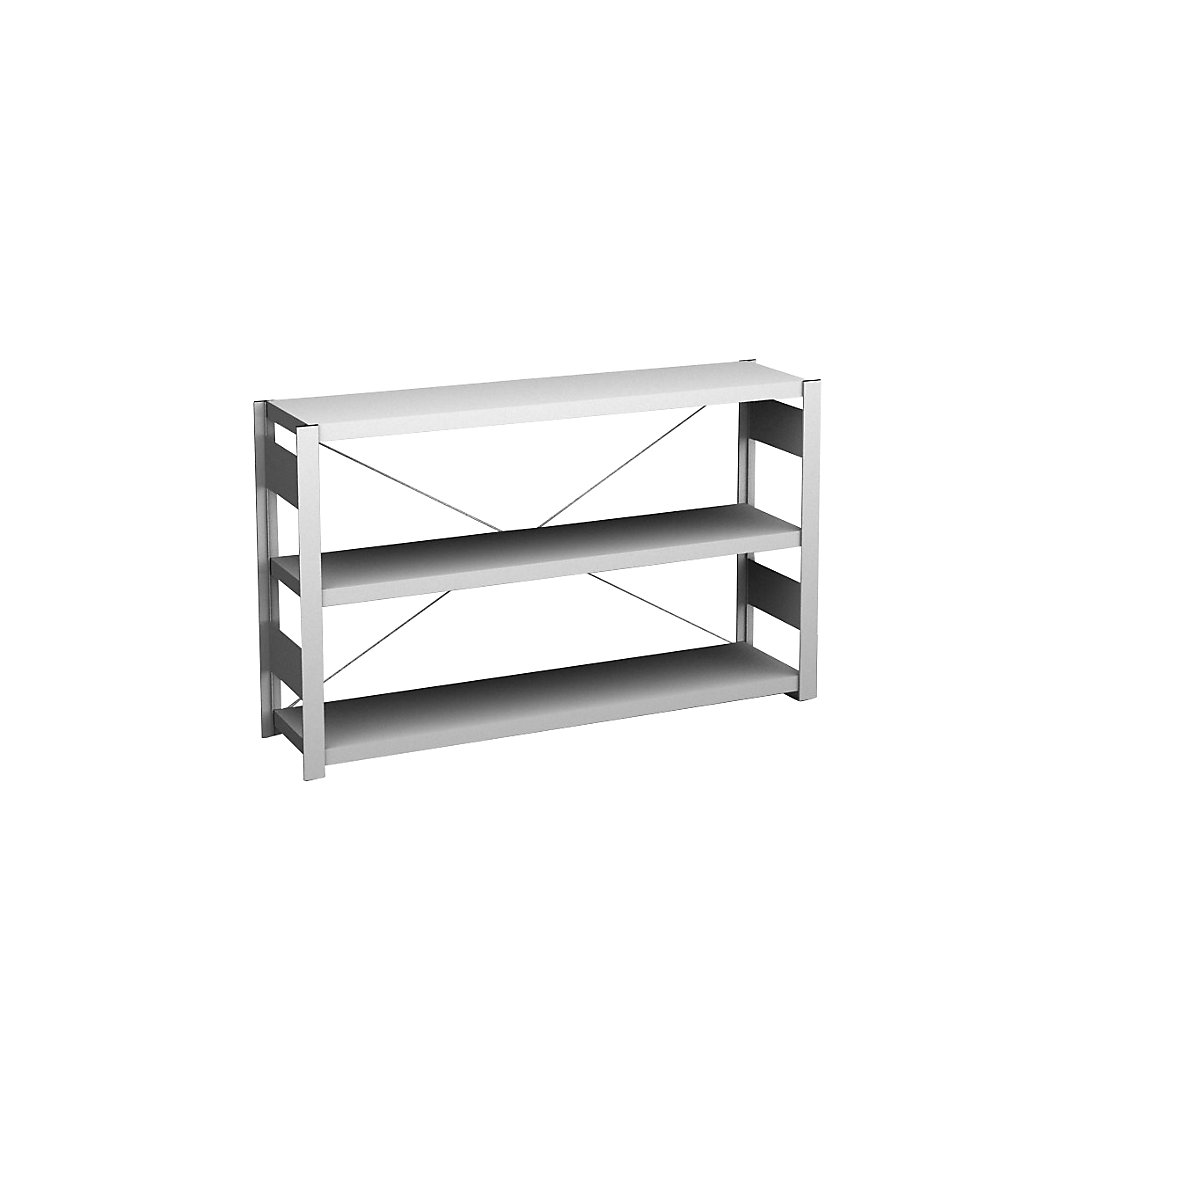 Sideboard shelving unit, light grey – hofe, height 825 mm, 3 shelves, standard shelf unit, shelf depth 300 mm, max. shelf load 175 kg-6